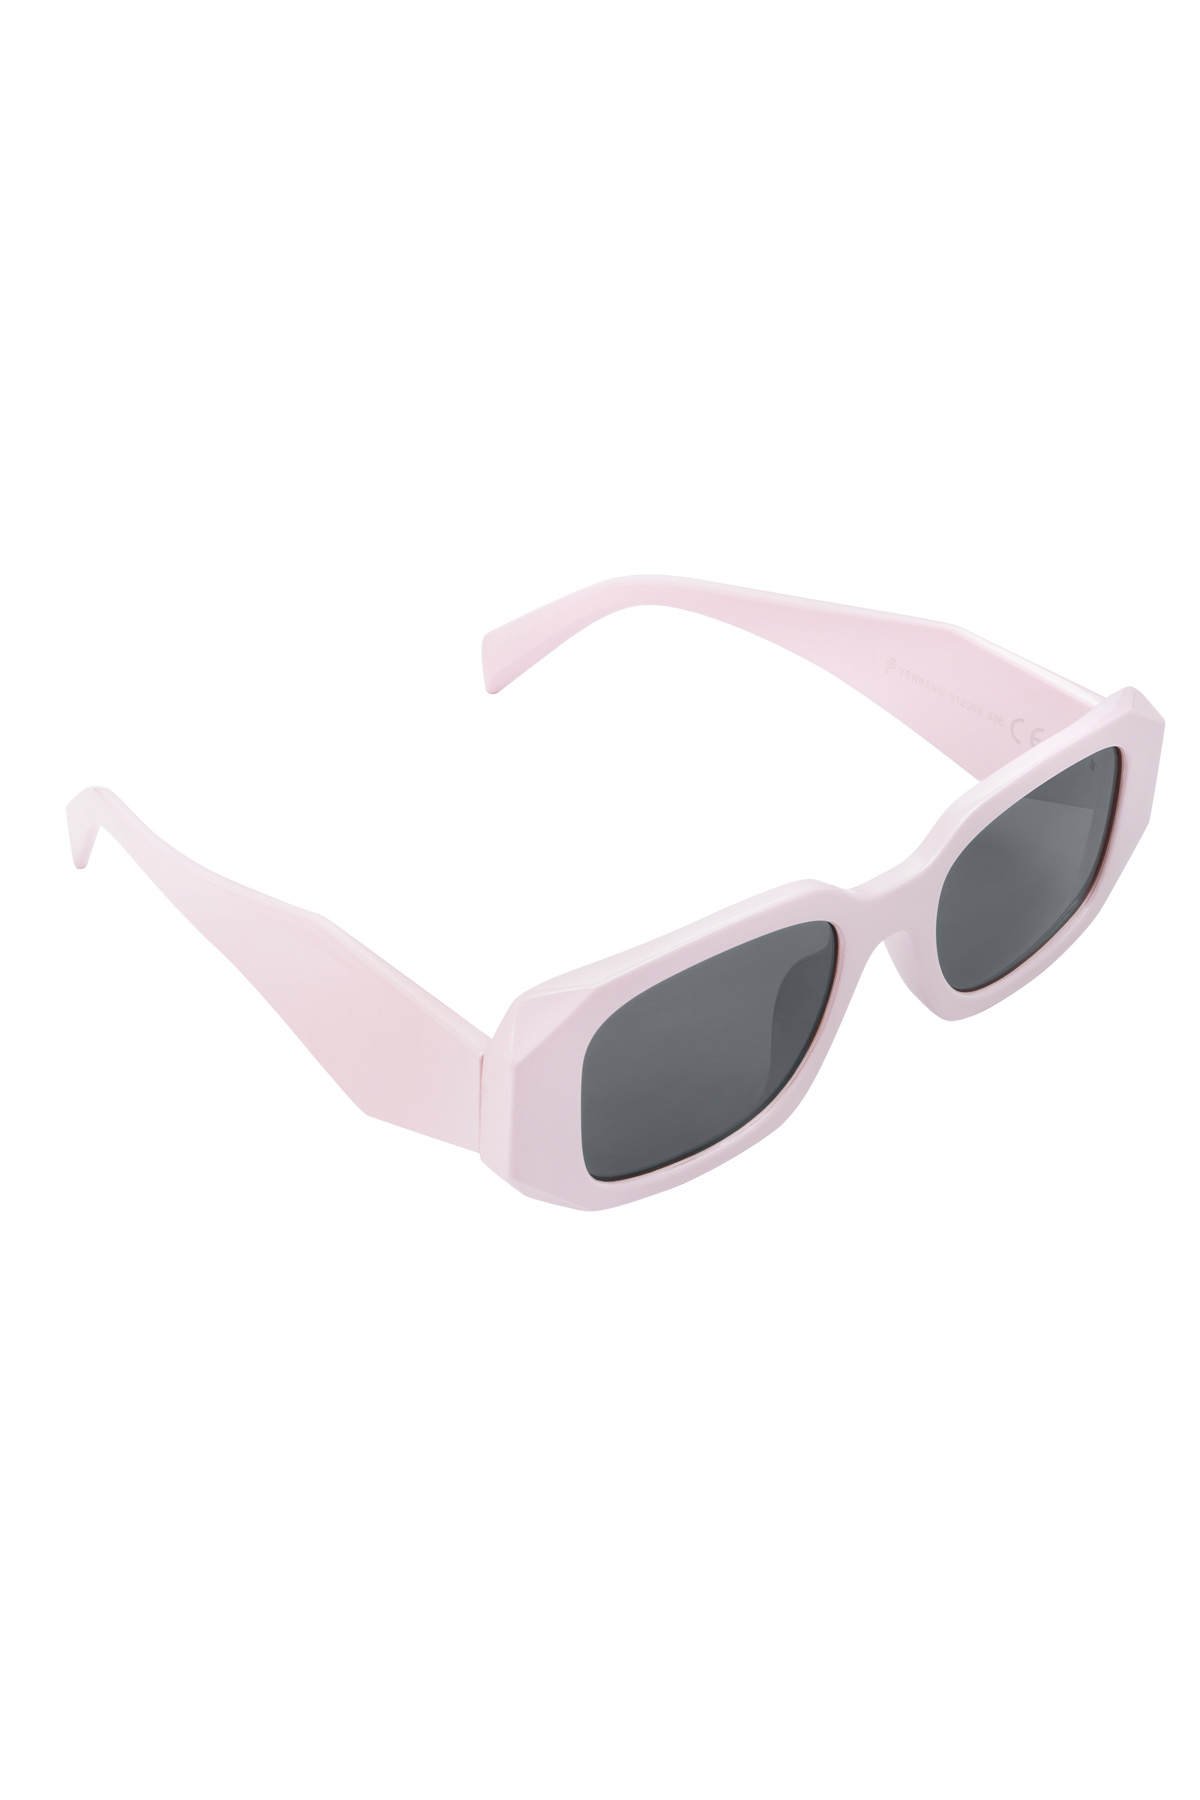 Sieht aus wie eine Sonnenbrille mit Ecken – schwarz/rosa